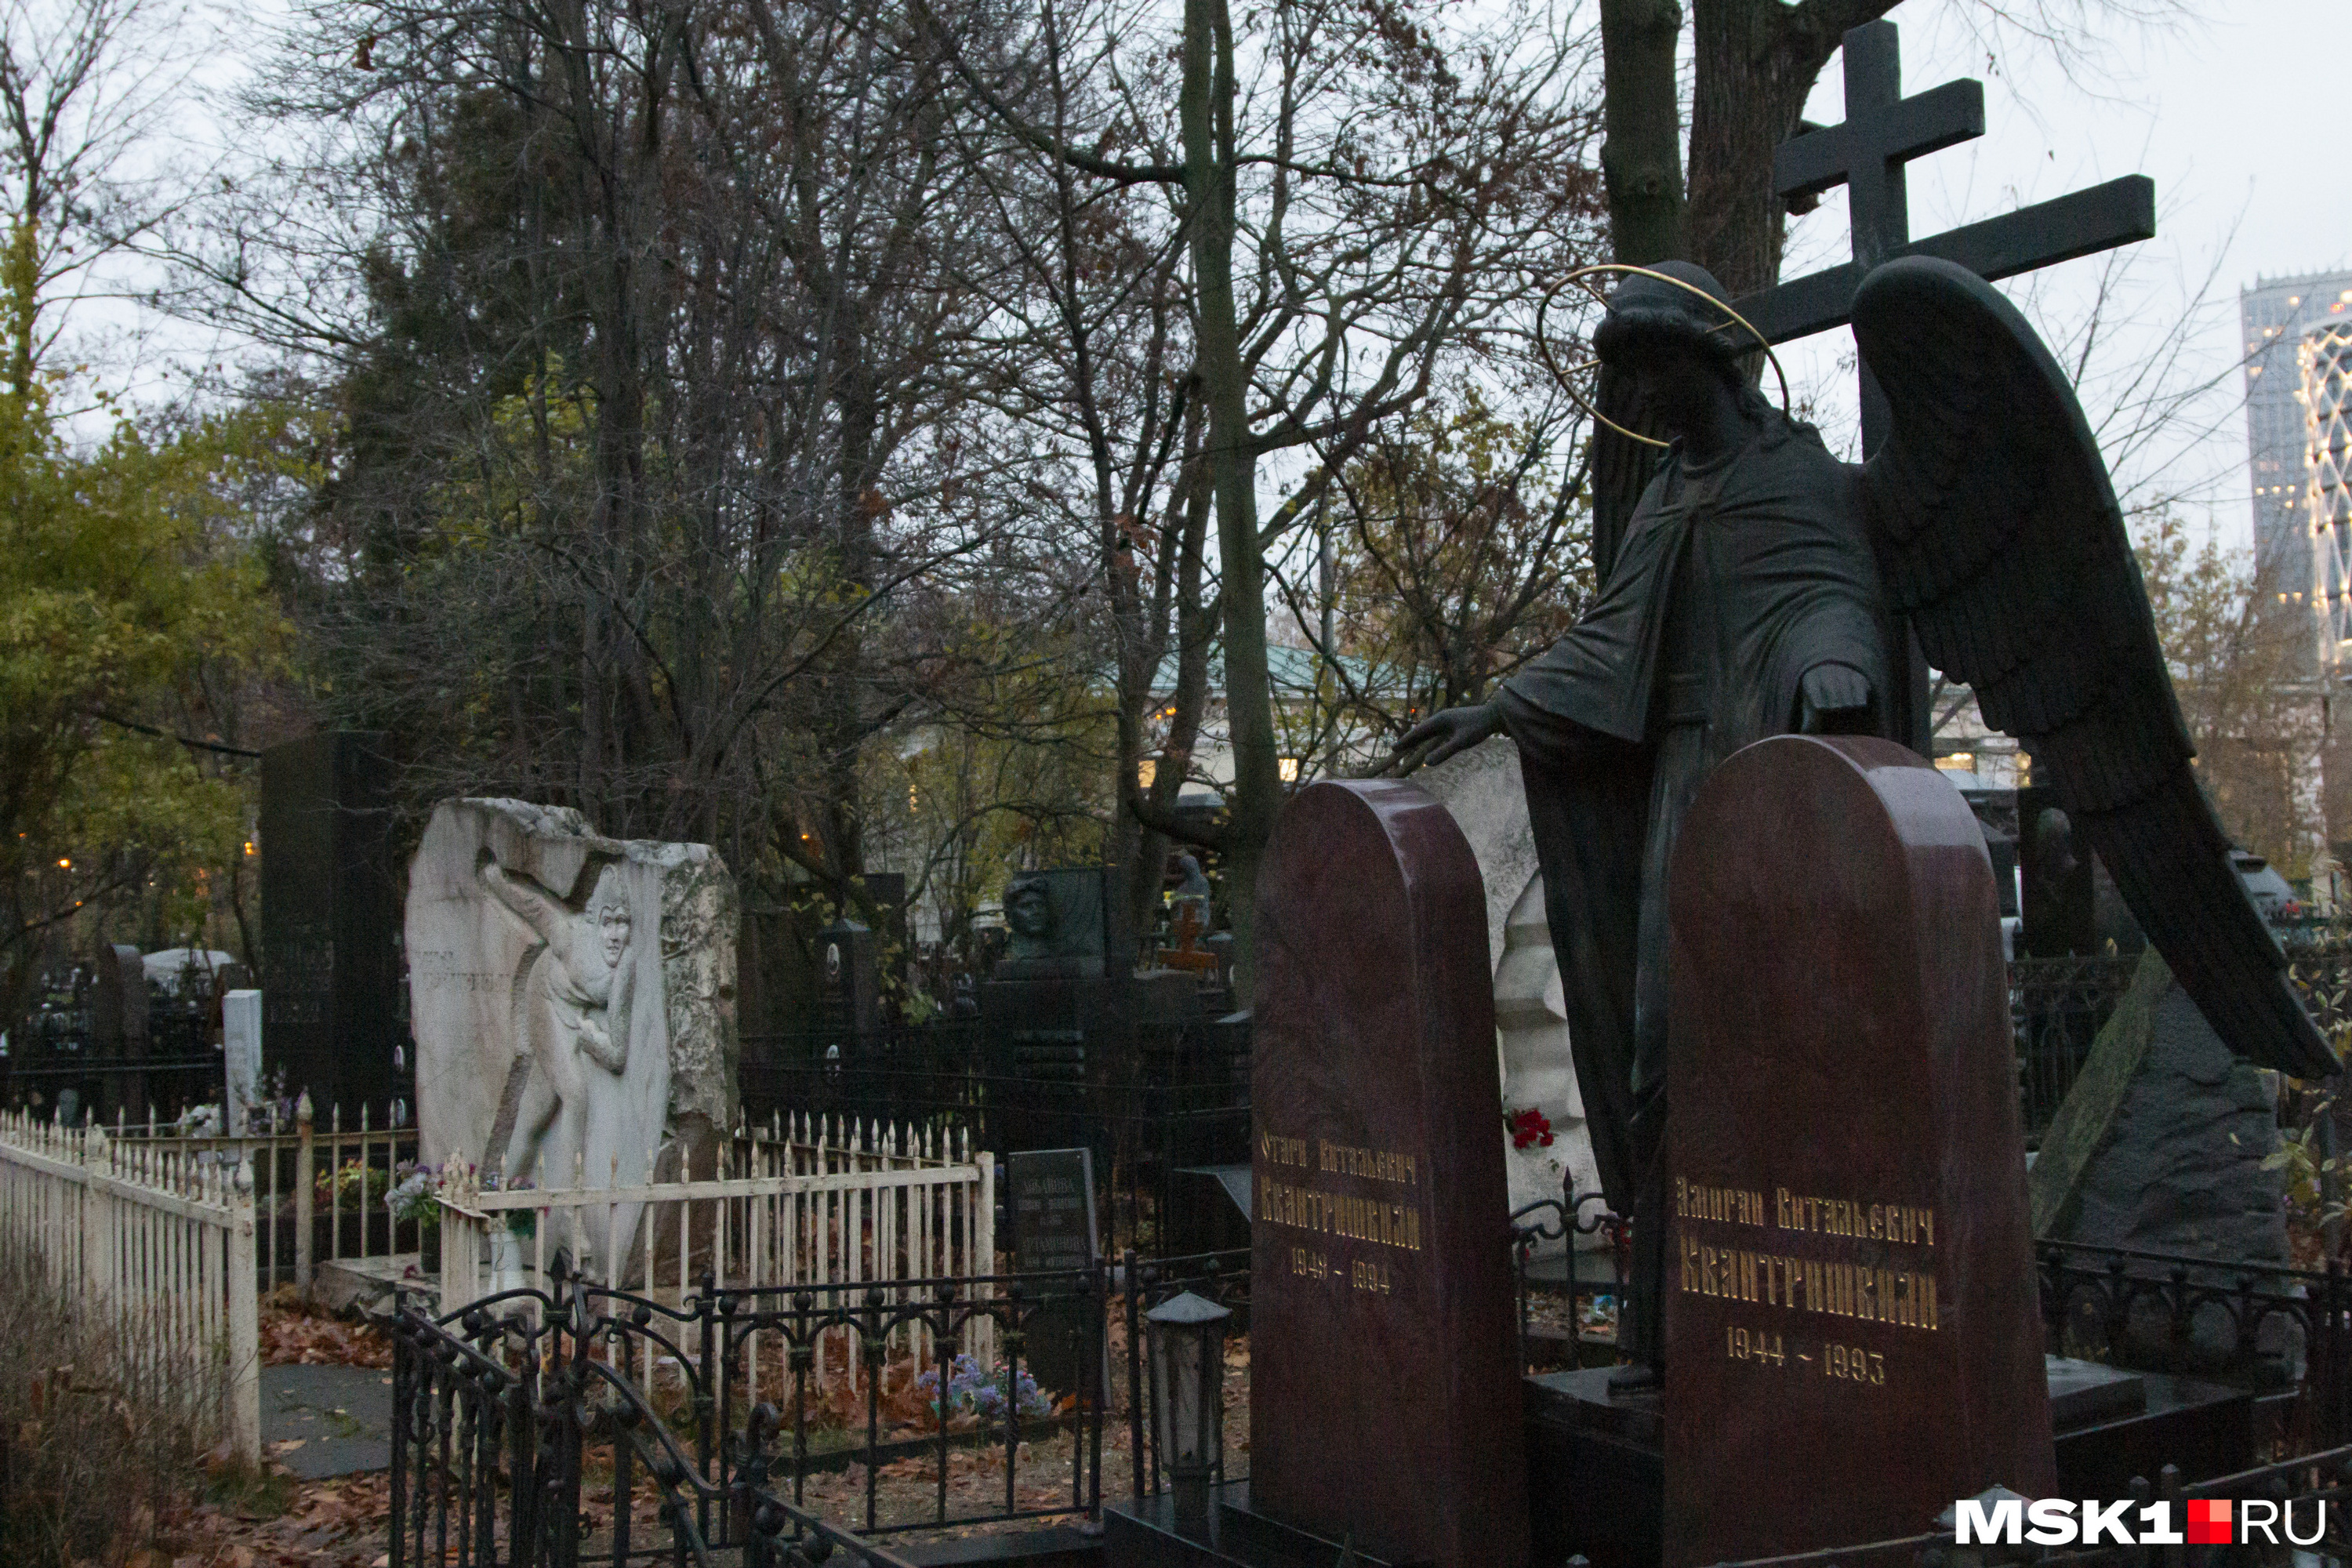 Ангел братьев Квантришвили расположен у самого входа на кладбище